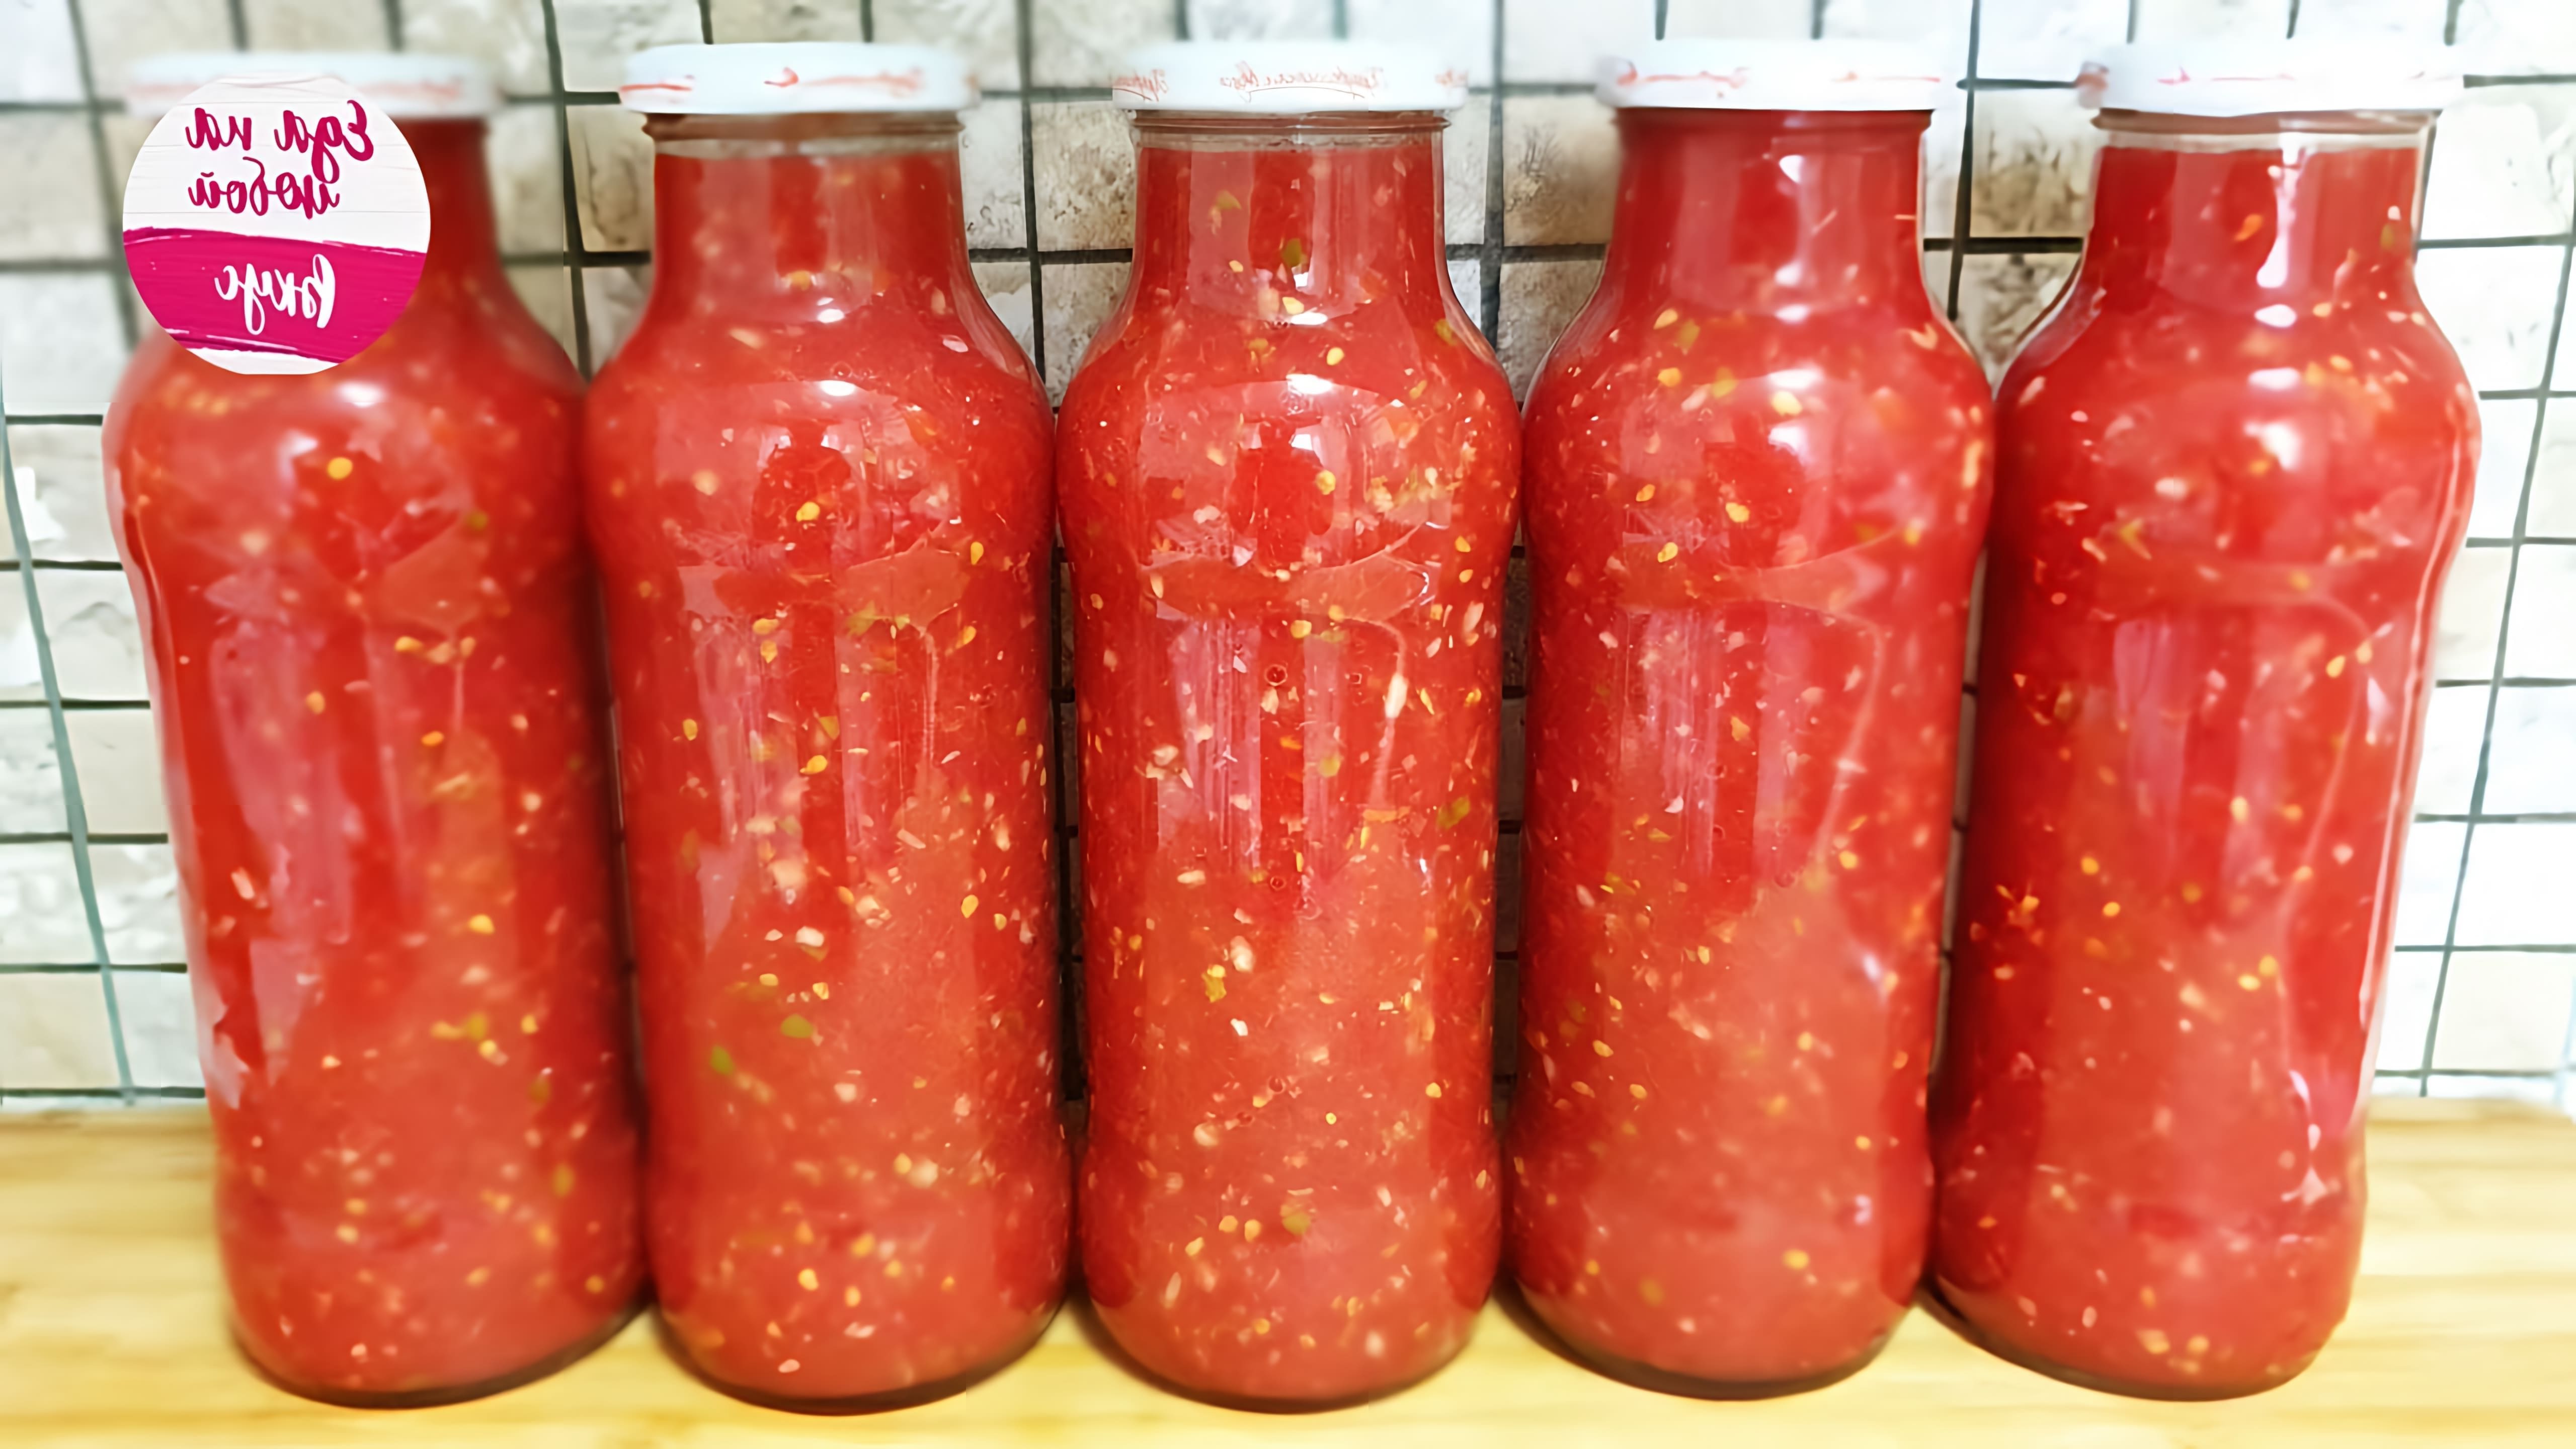 Видео как приготовить томатный соус под названием "огонок на зиму", который можно хранить на зиму